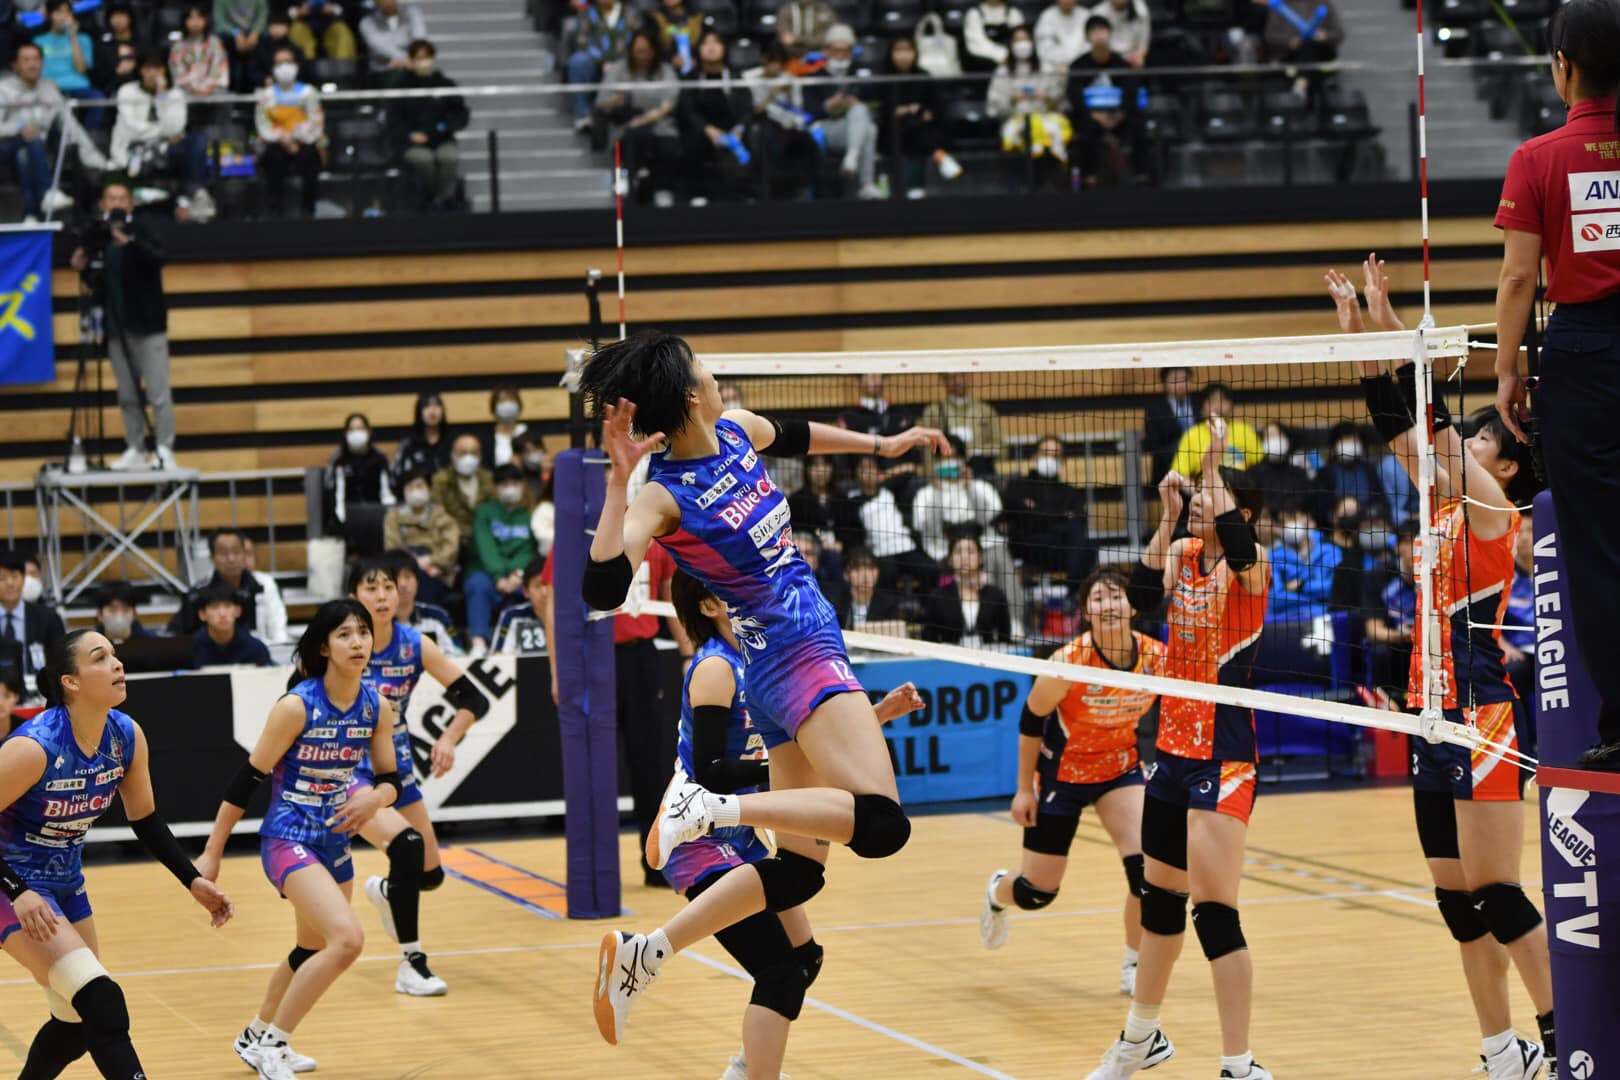 'Chân dài' bóng chuyền Thanh Thúy rực sáng ở Nhật Bản, giành danh hiệu xuất sắc nhất - Ảnh 2.